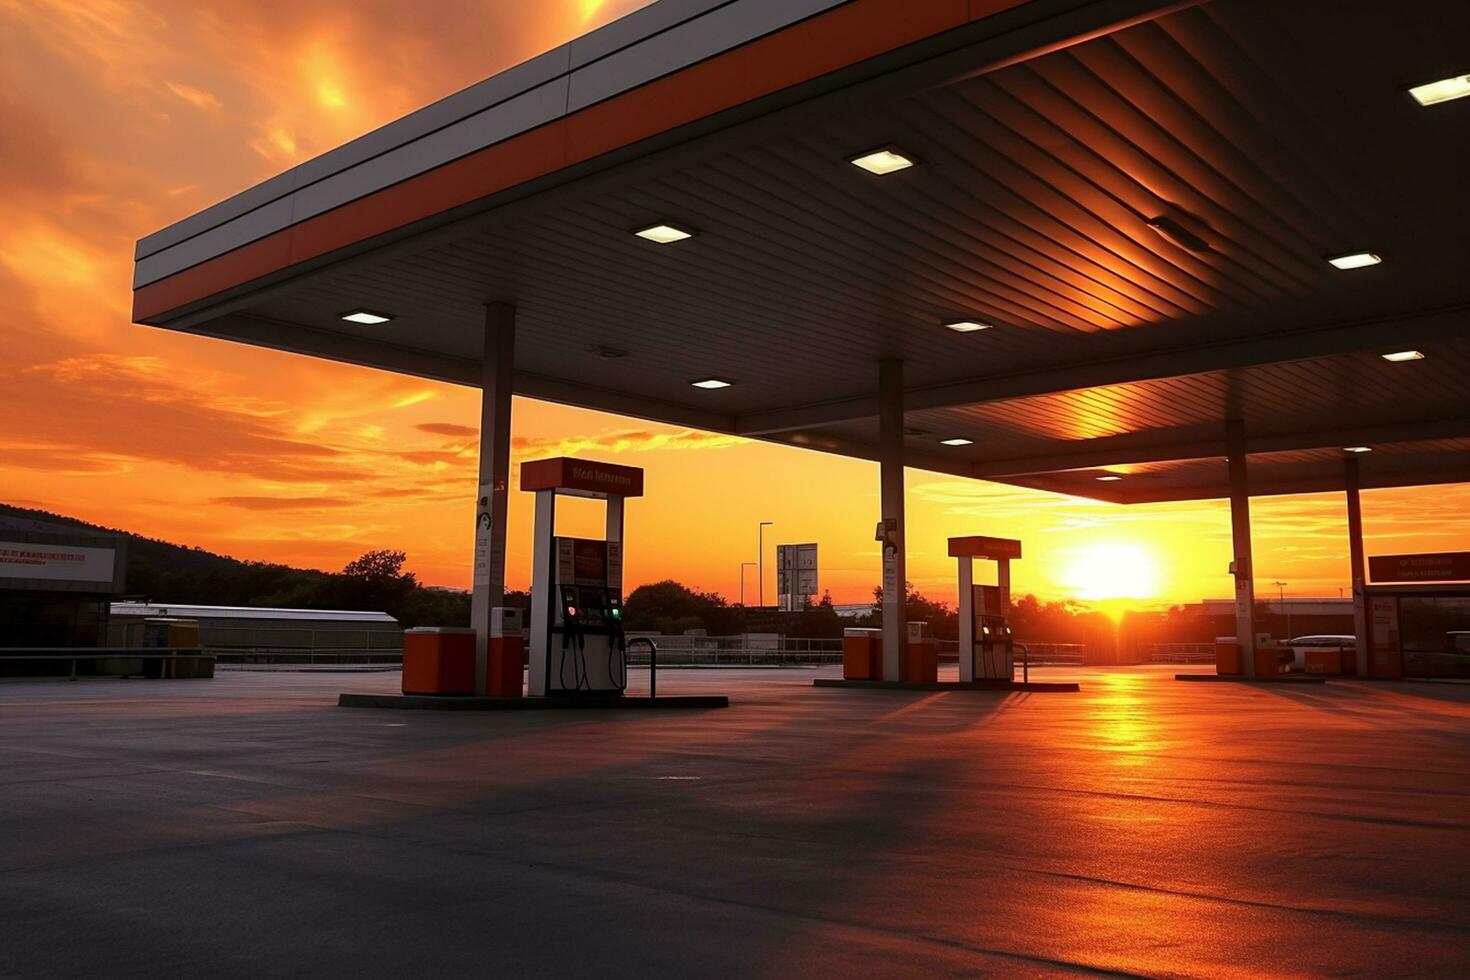 gasolina e gás estação às pôr do sol. ai gerado foto